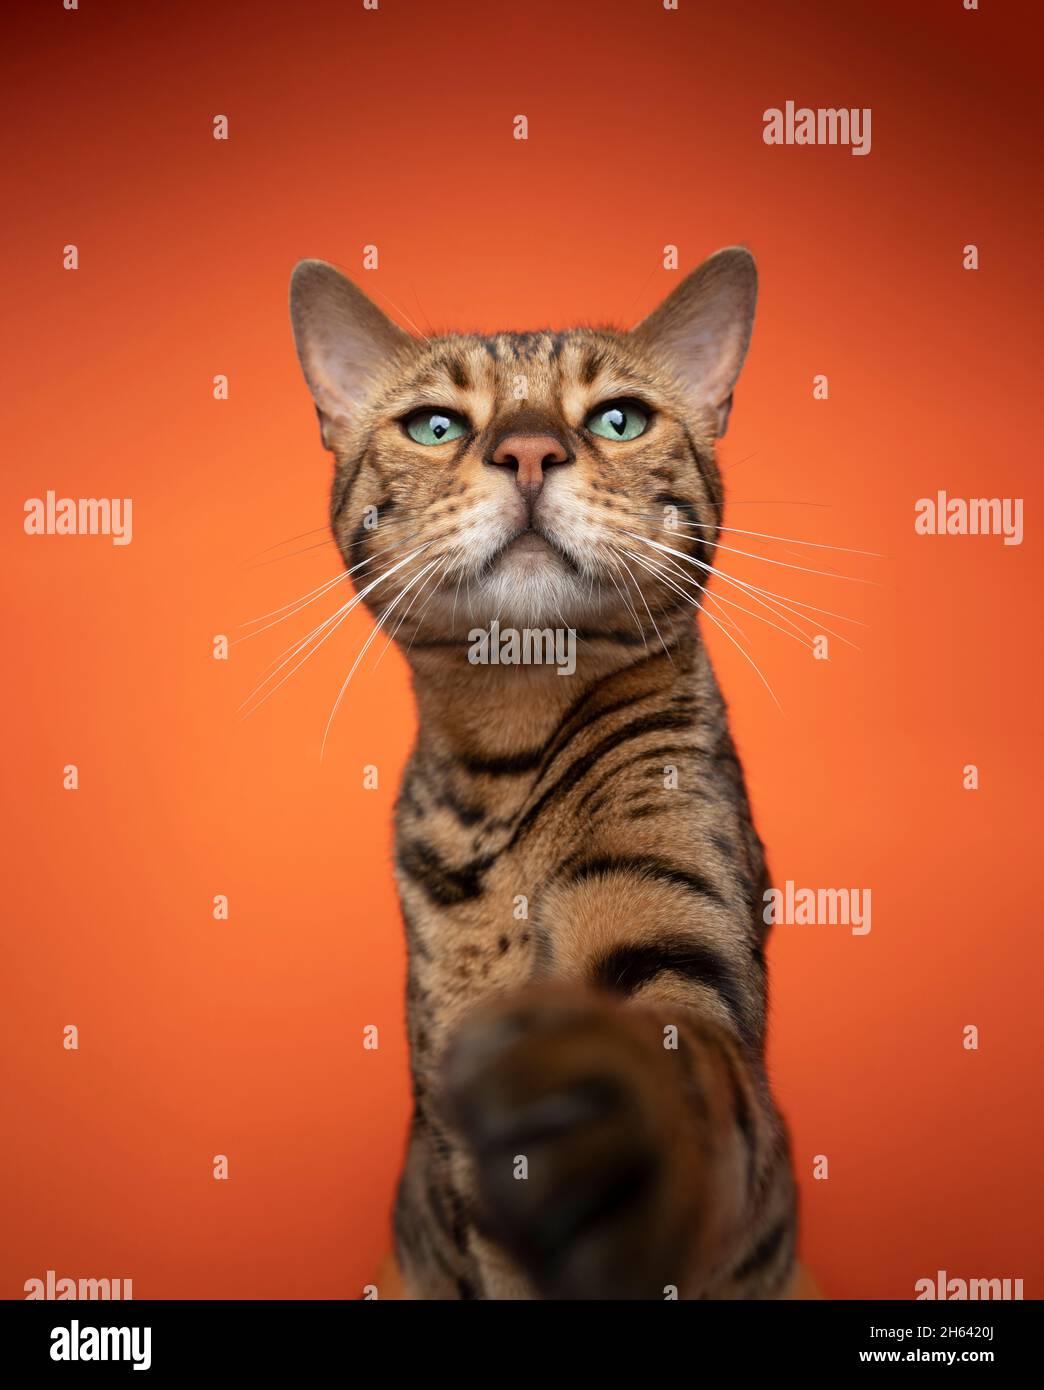 curioso gatto bruno bengala con occhi verdi che raggiunge per la macchina fotografica con zampa su sfondo arancione Foto Stock